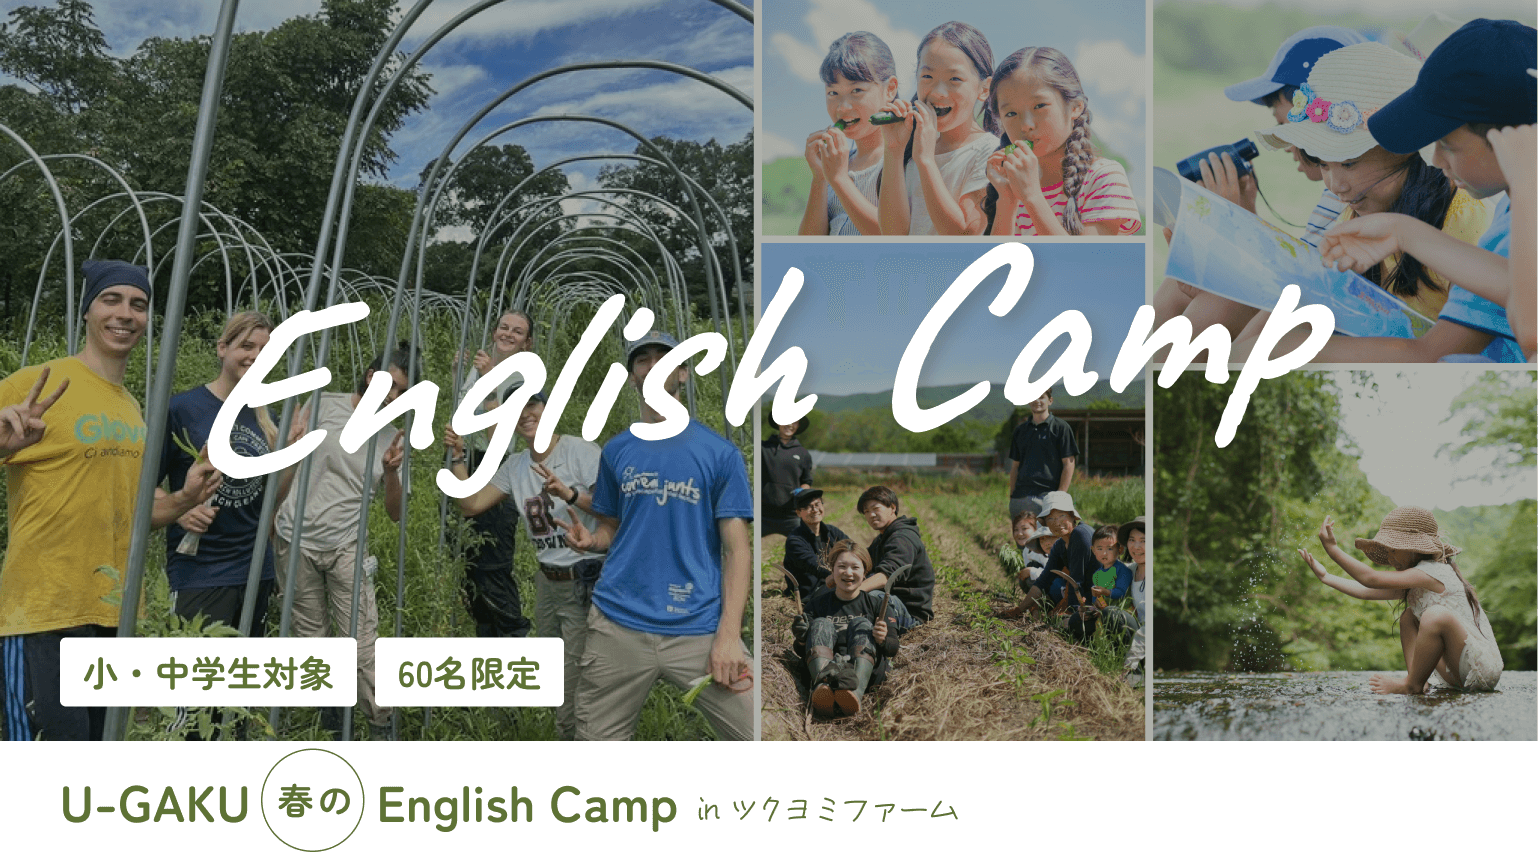 U-GAKU English Camp